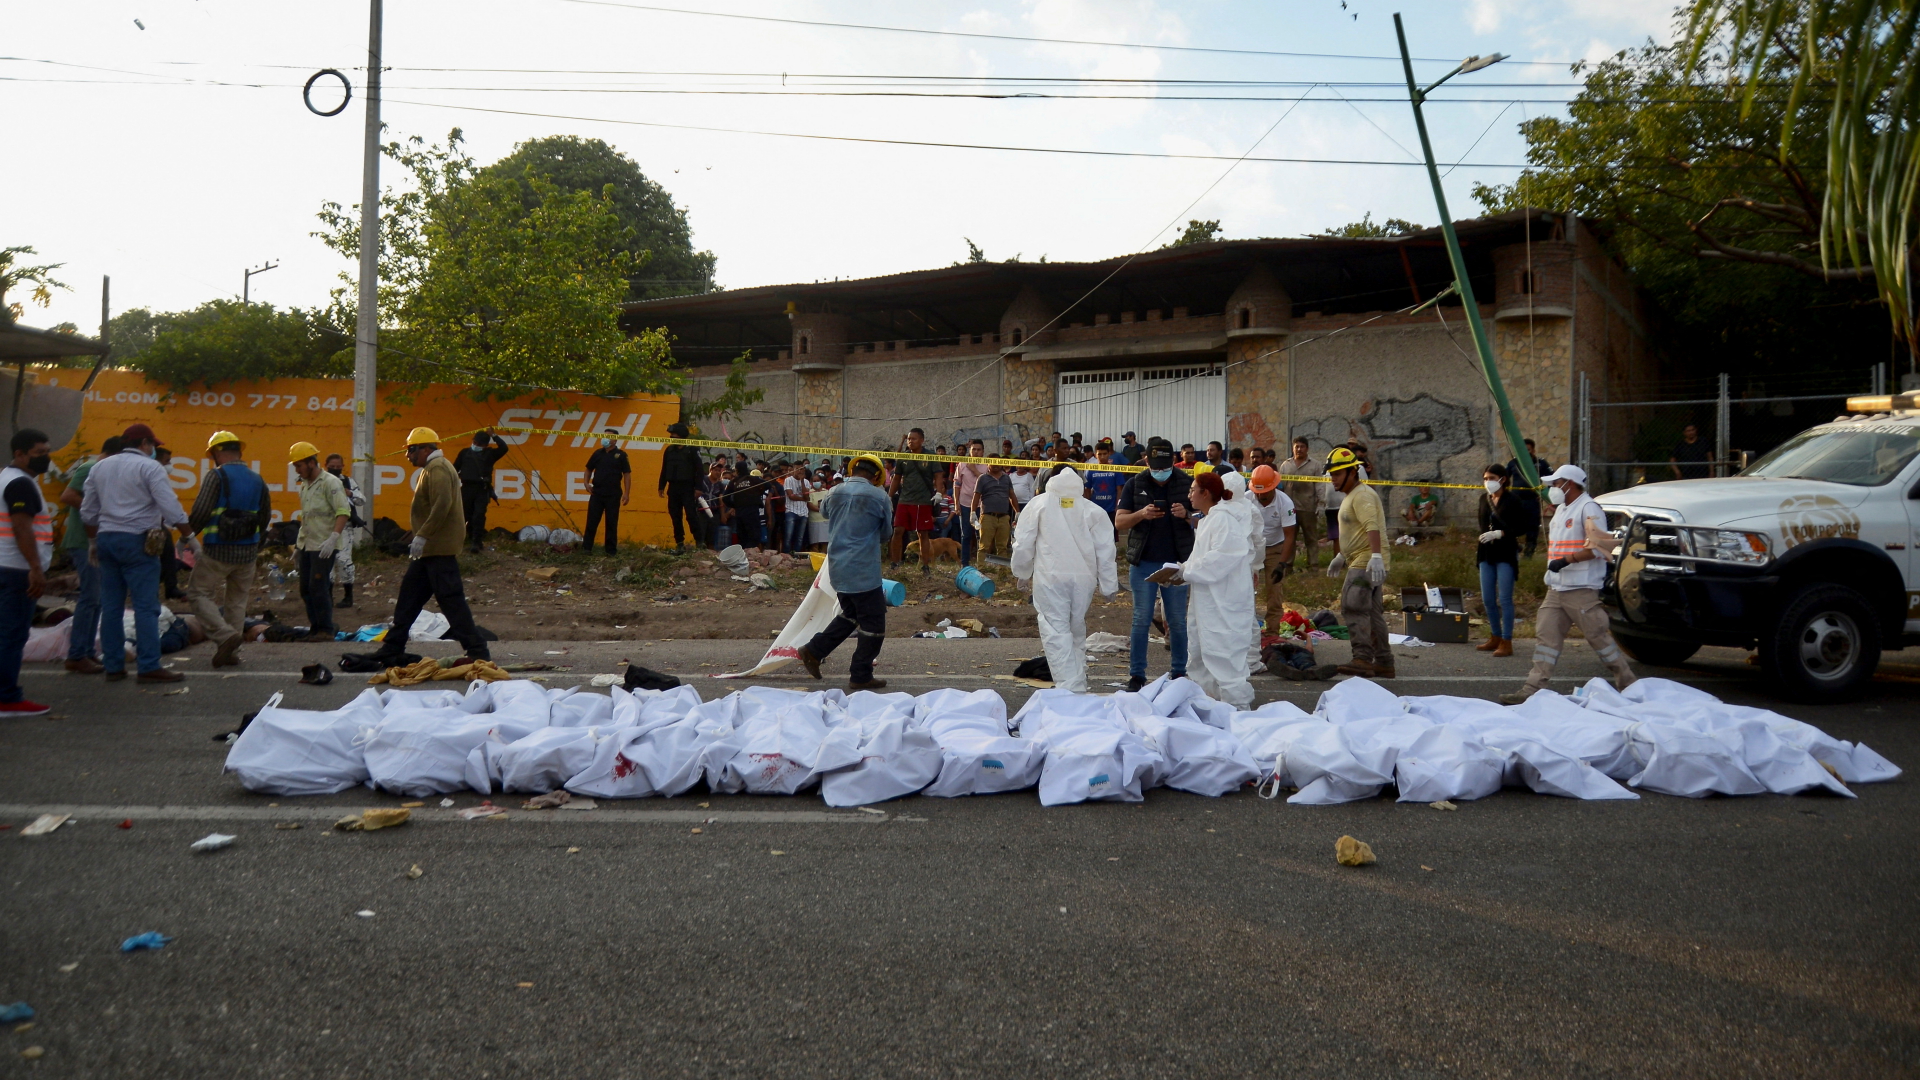 Dutzende Leichensäcke liegen nach einem Unfall im mexikanischen Bundesstaat Chiapas am Straßenrand. | REUTERS